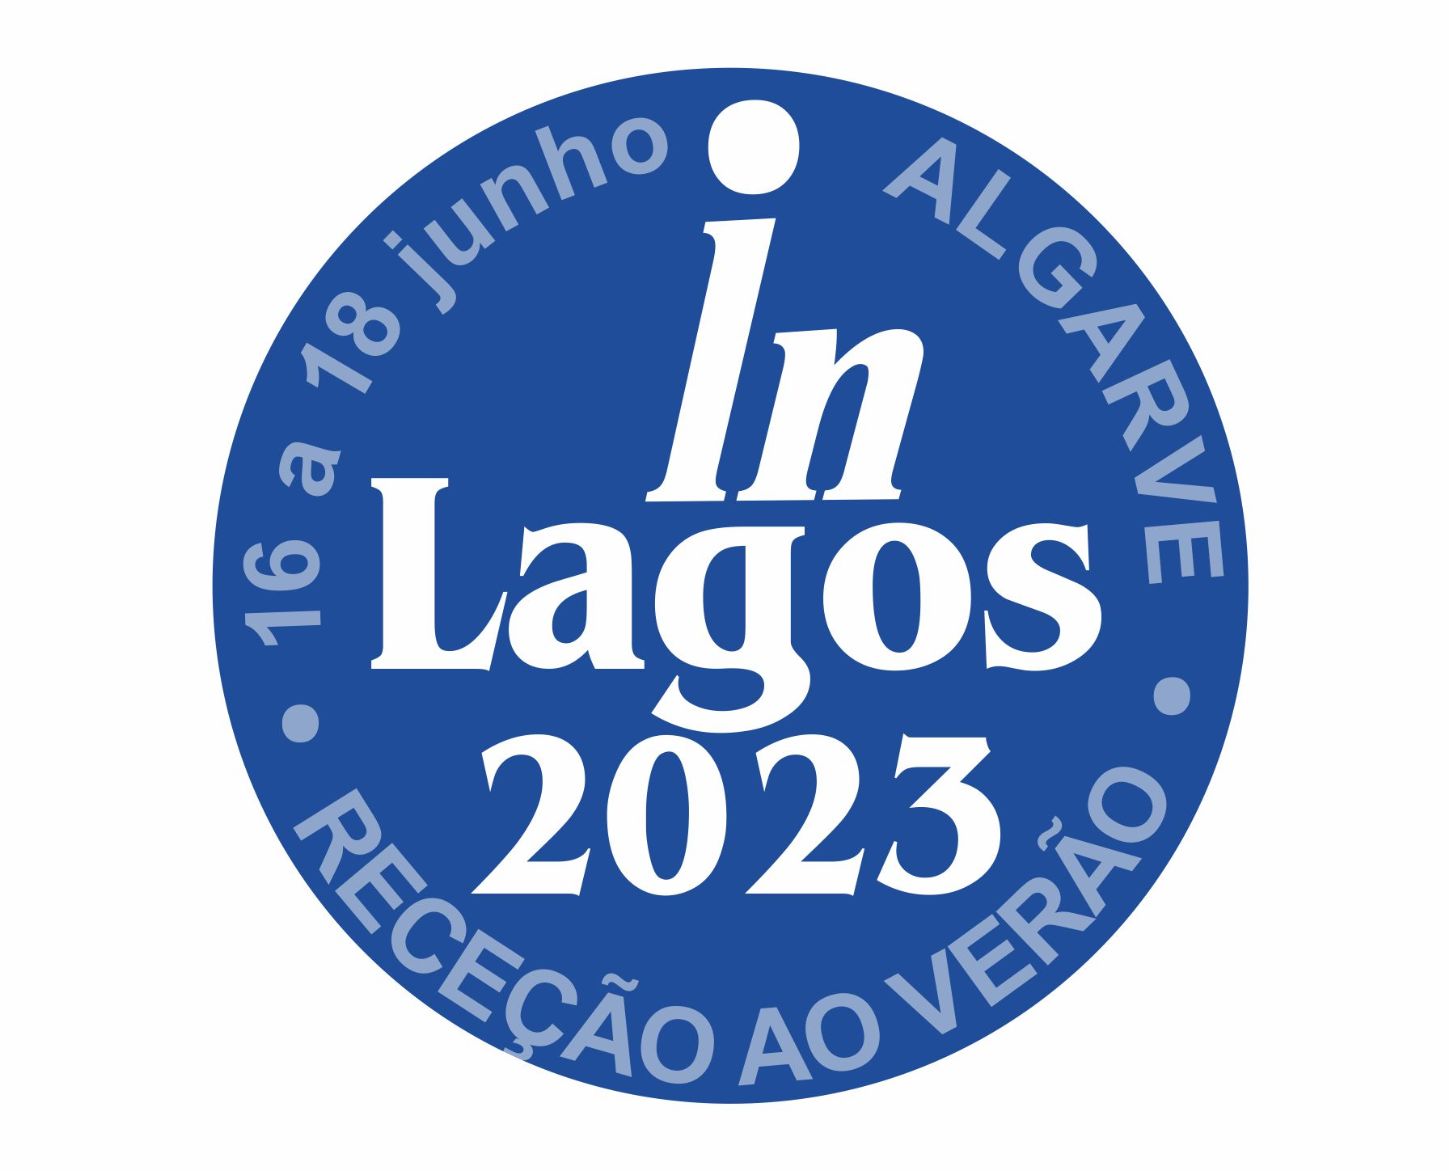 Neste fim de semana: Recepção ao Verão – IN Lagos 2023